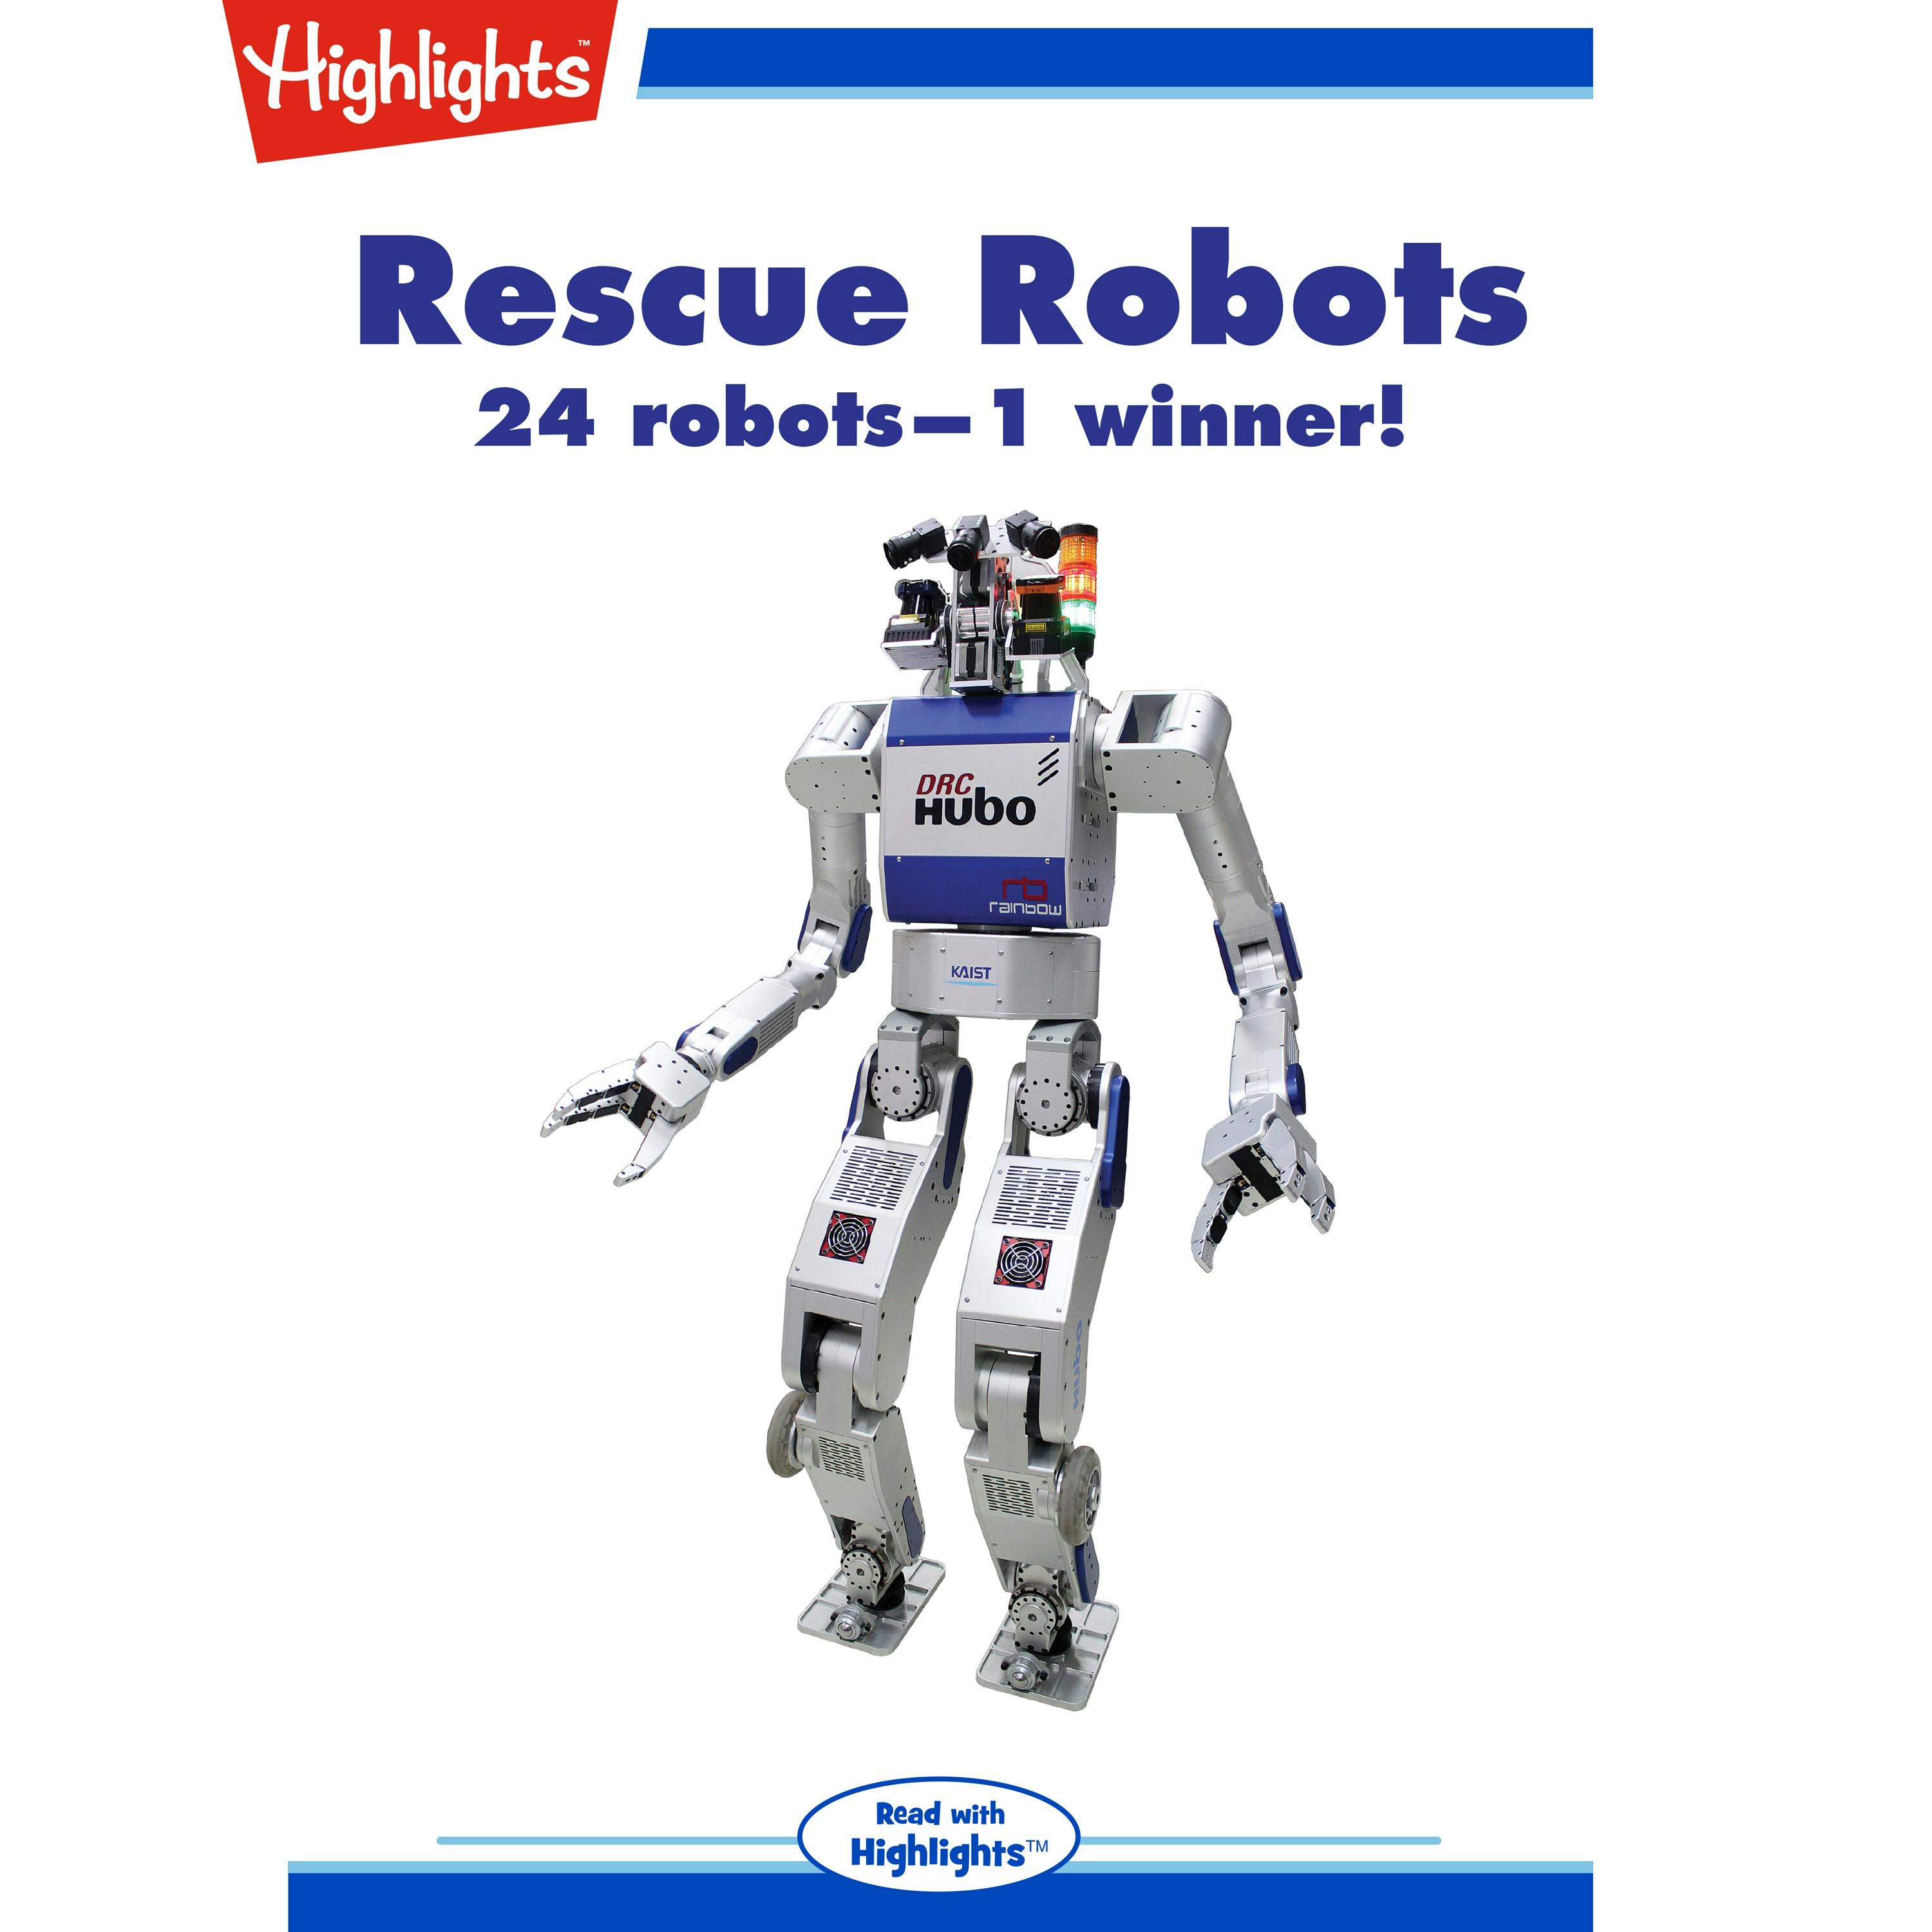 Rescue Robots - Andy Boyles